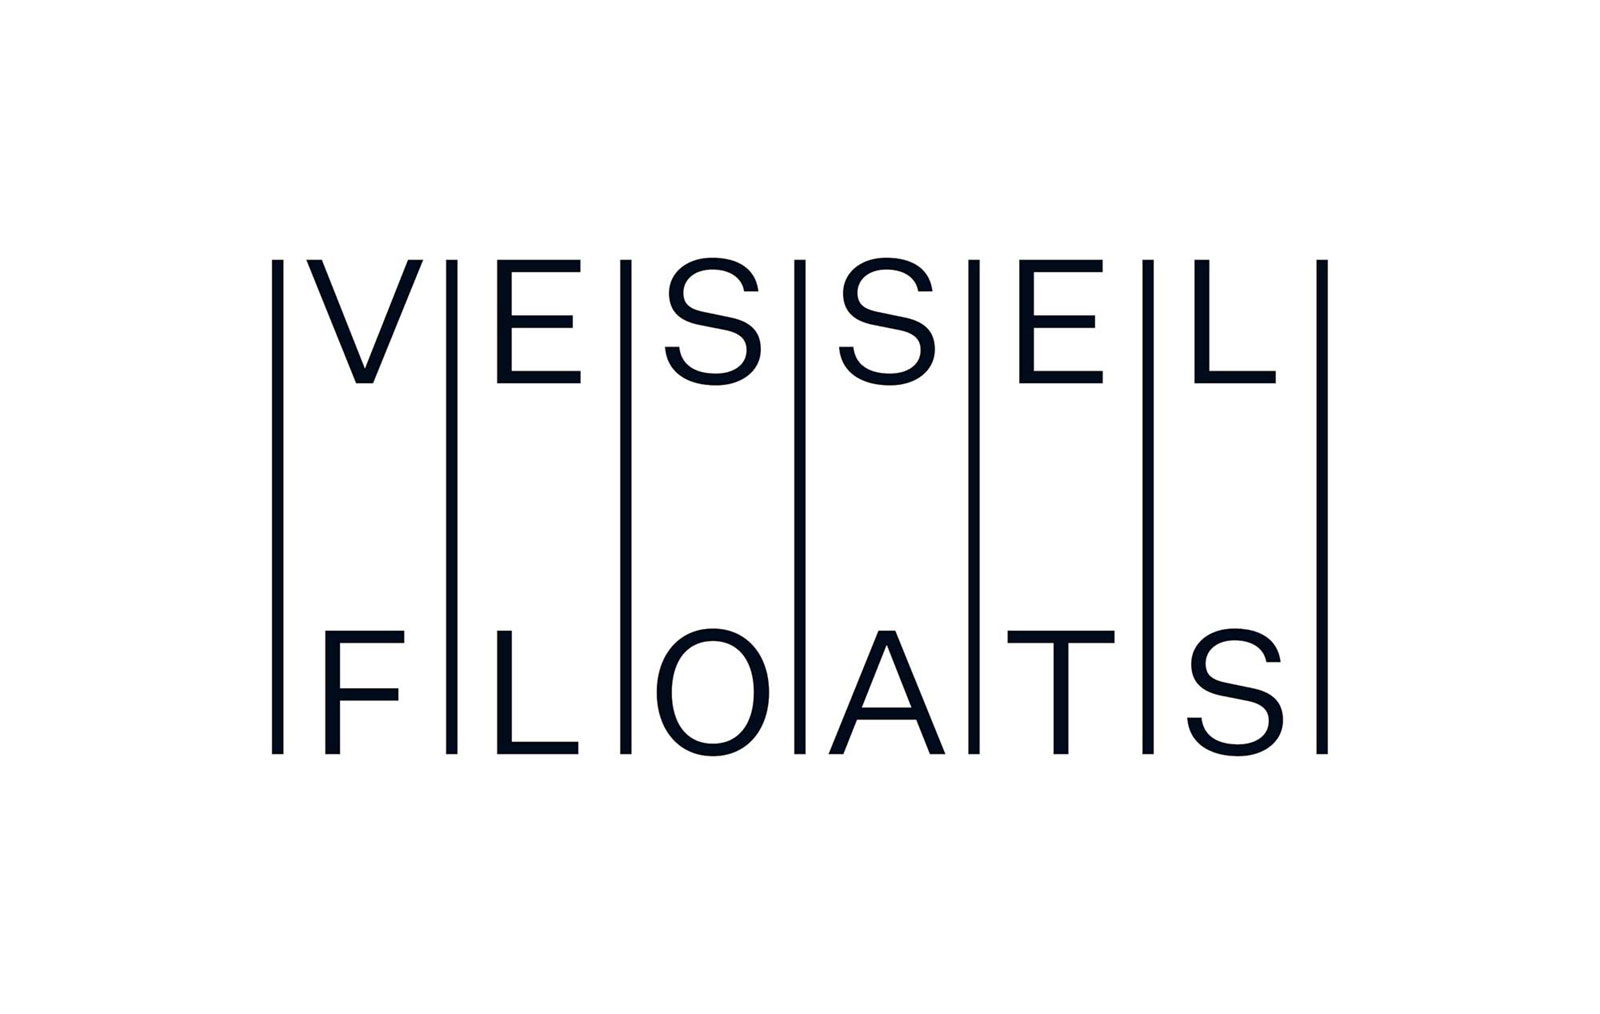 Vessel Floats